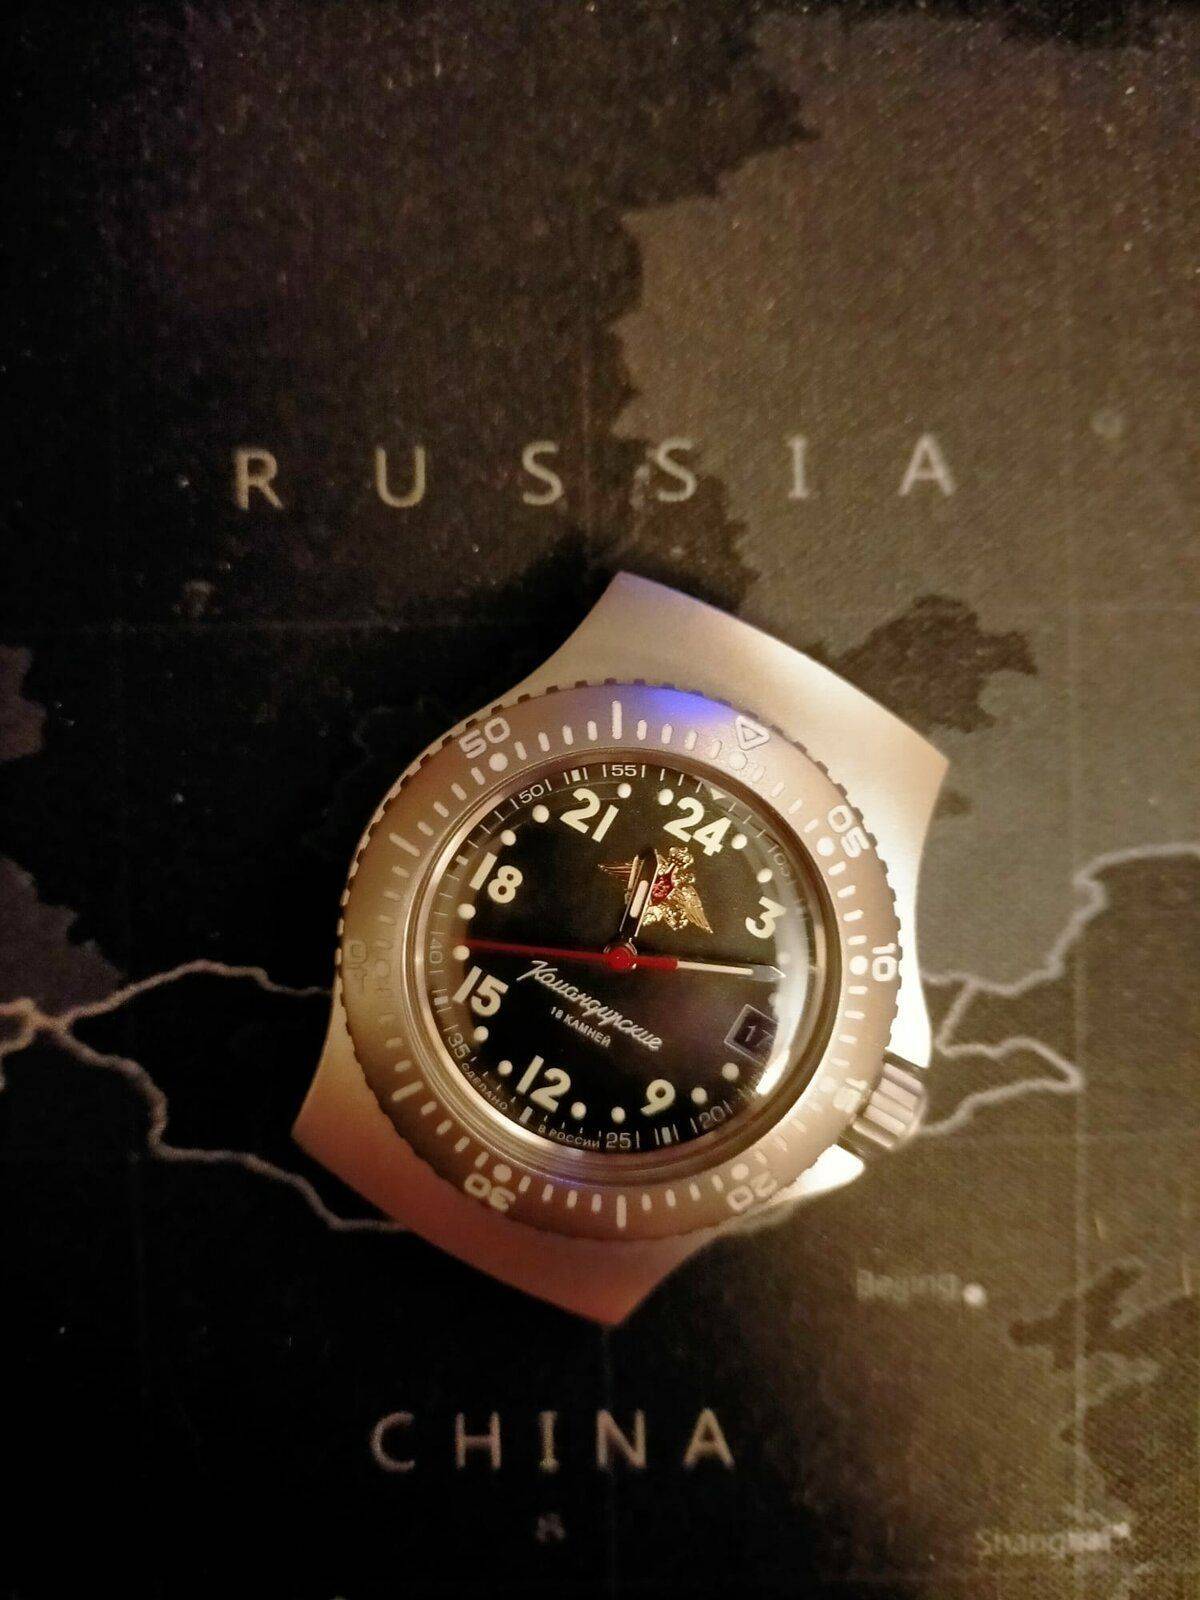 Mi nuevo Komandirskie 24 HORAS! | Relojes Especiales, EL foro de relojes